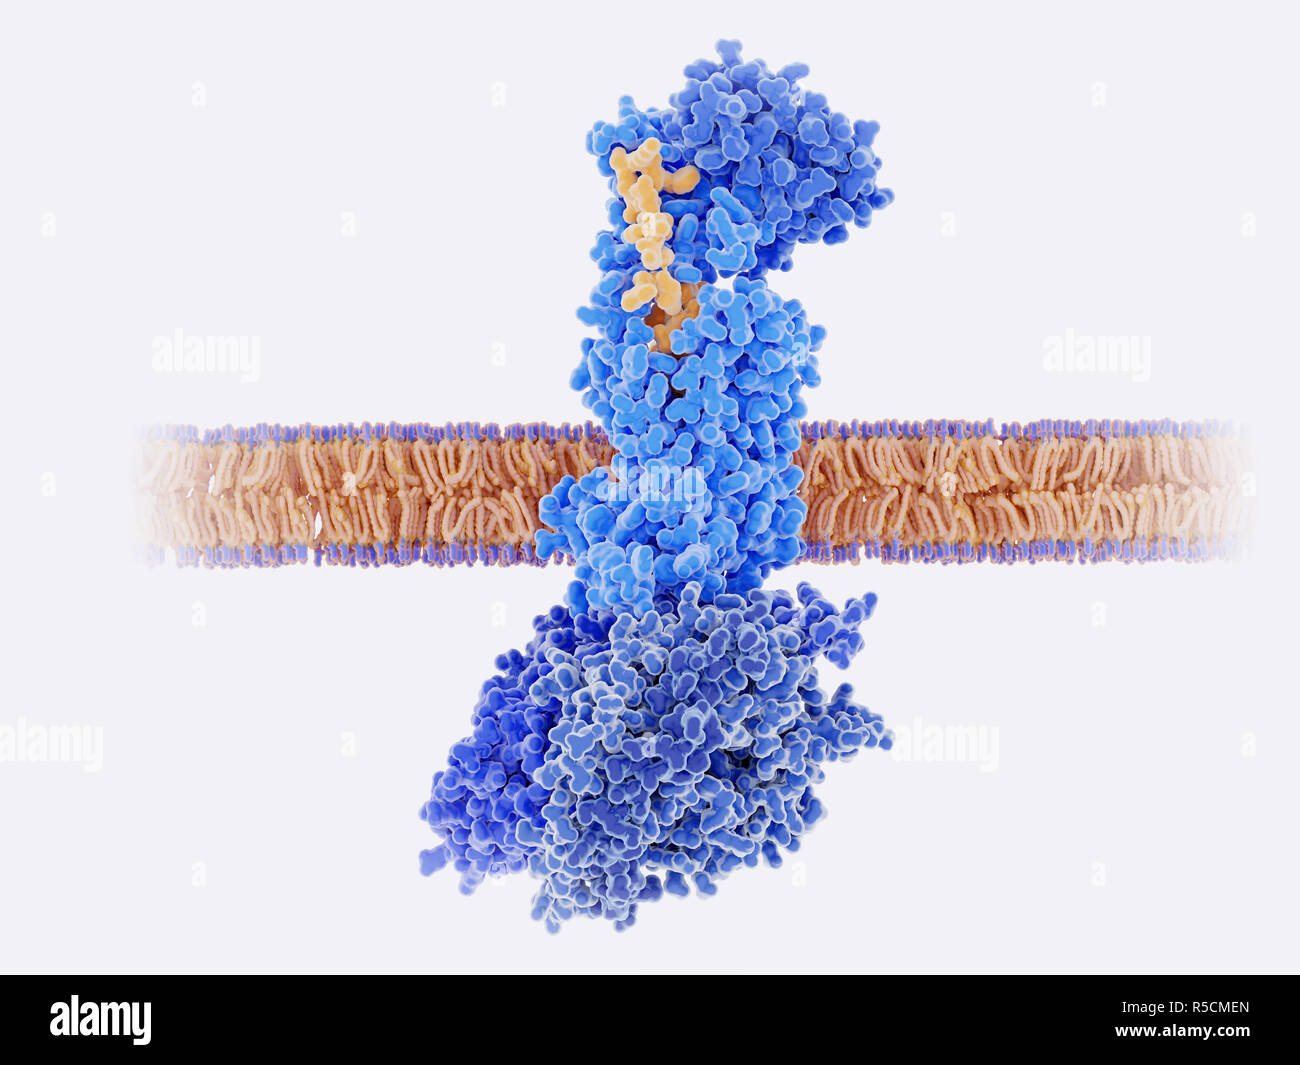 Calcitonin Peptid an seinen Rezeptor gebunden, Illustration. Die Calcitonin gene-ähnliche Peptide (CGRP, Gelb) bindet an seinen Rezeptor (blau) auf den Membranen der Nervenzellen und glatten Muskelzellen in der zerebralen (Gehirn) Blutgefäße. Dies aktiviert einen Signalkaskade durch G-Proteine (Dunkelblau, unten in der Mitte), führt zu einer Erweiterung der Blutgefäße im Gehirn (Vasodilatation). Dies ist ein Faktor für Erkrankungen wie Migräne, und Blockieren dieses Rezeptors ist eine mögliche Behandlung für Migräne. Stockfoto